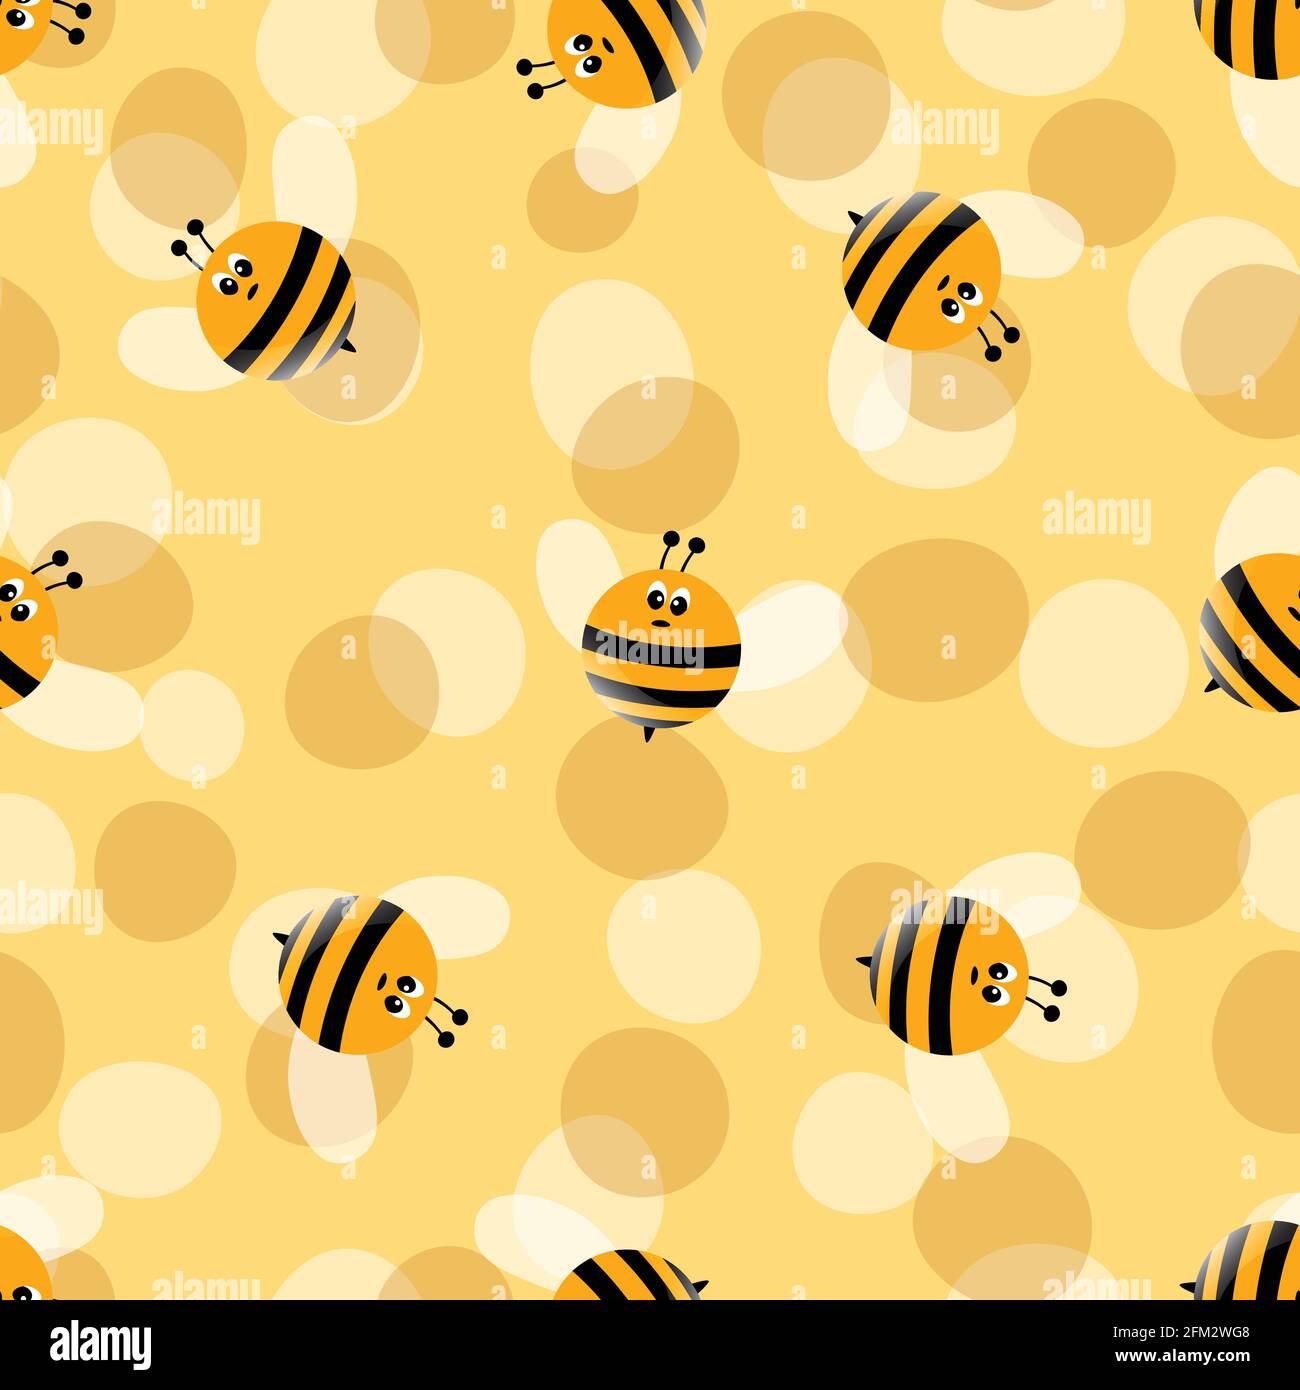 100 Aesthetic Bee Wallpapers  Wallpaperscom